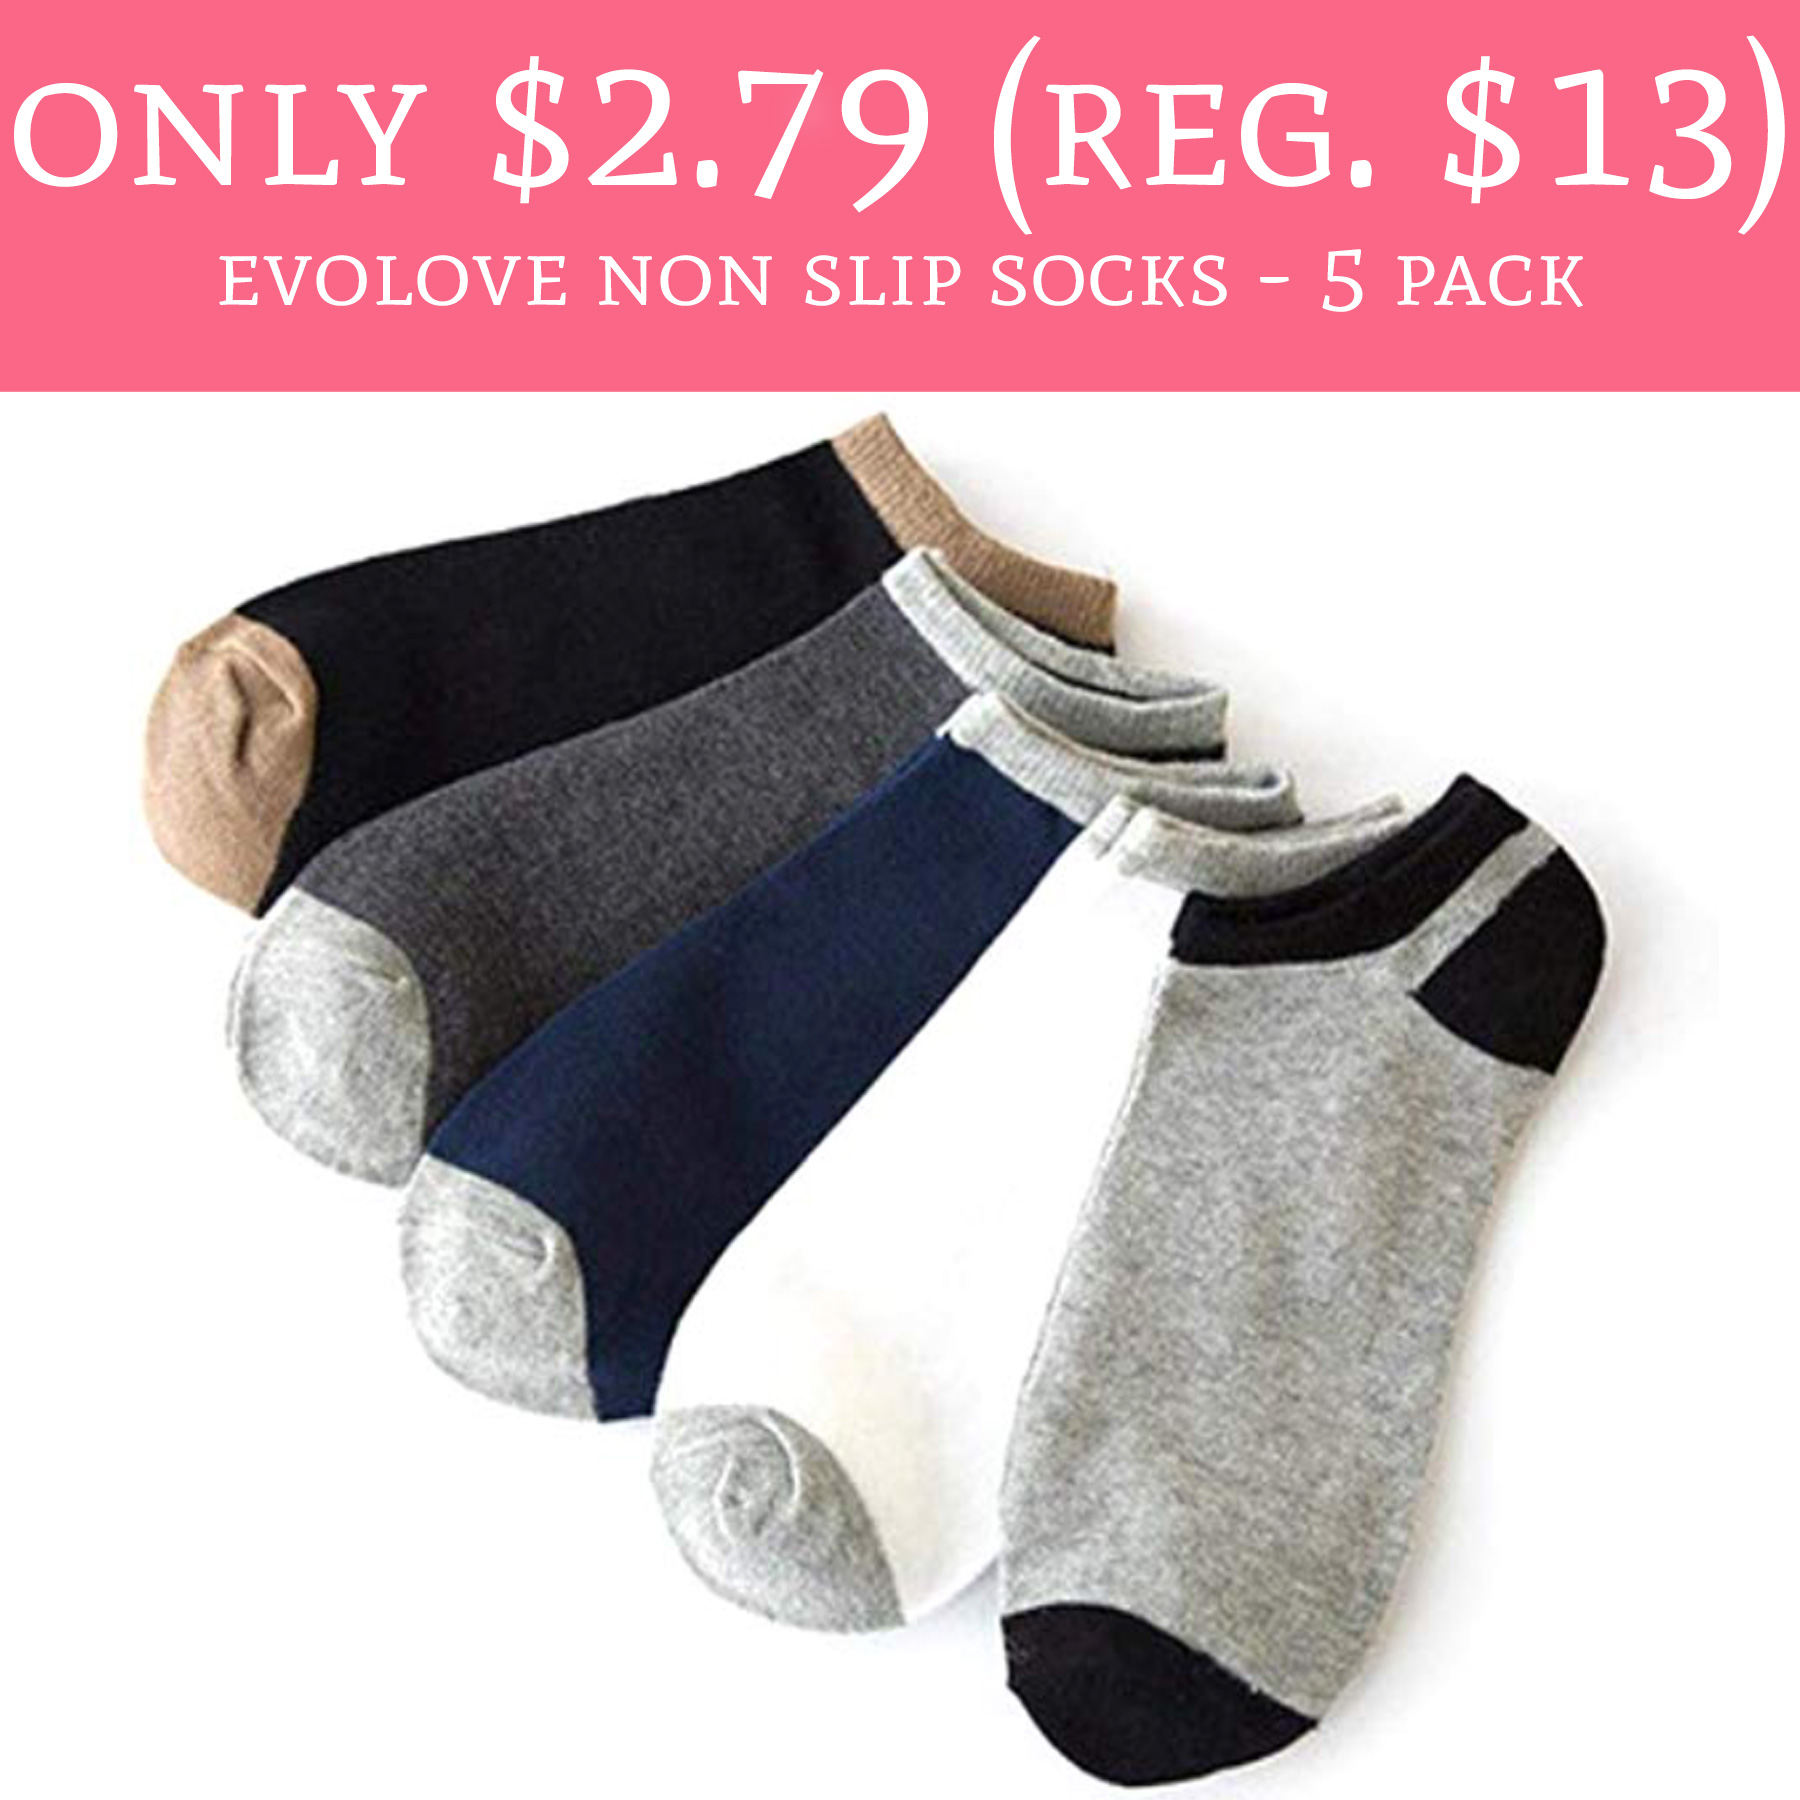 evolove-non-slip-socks-5-pack